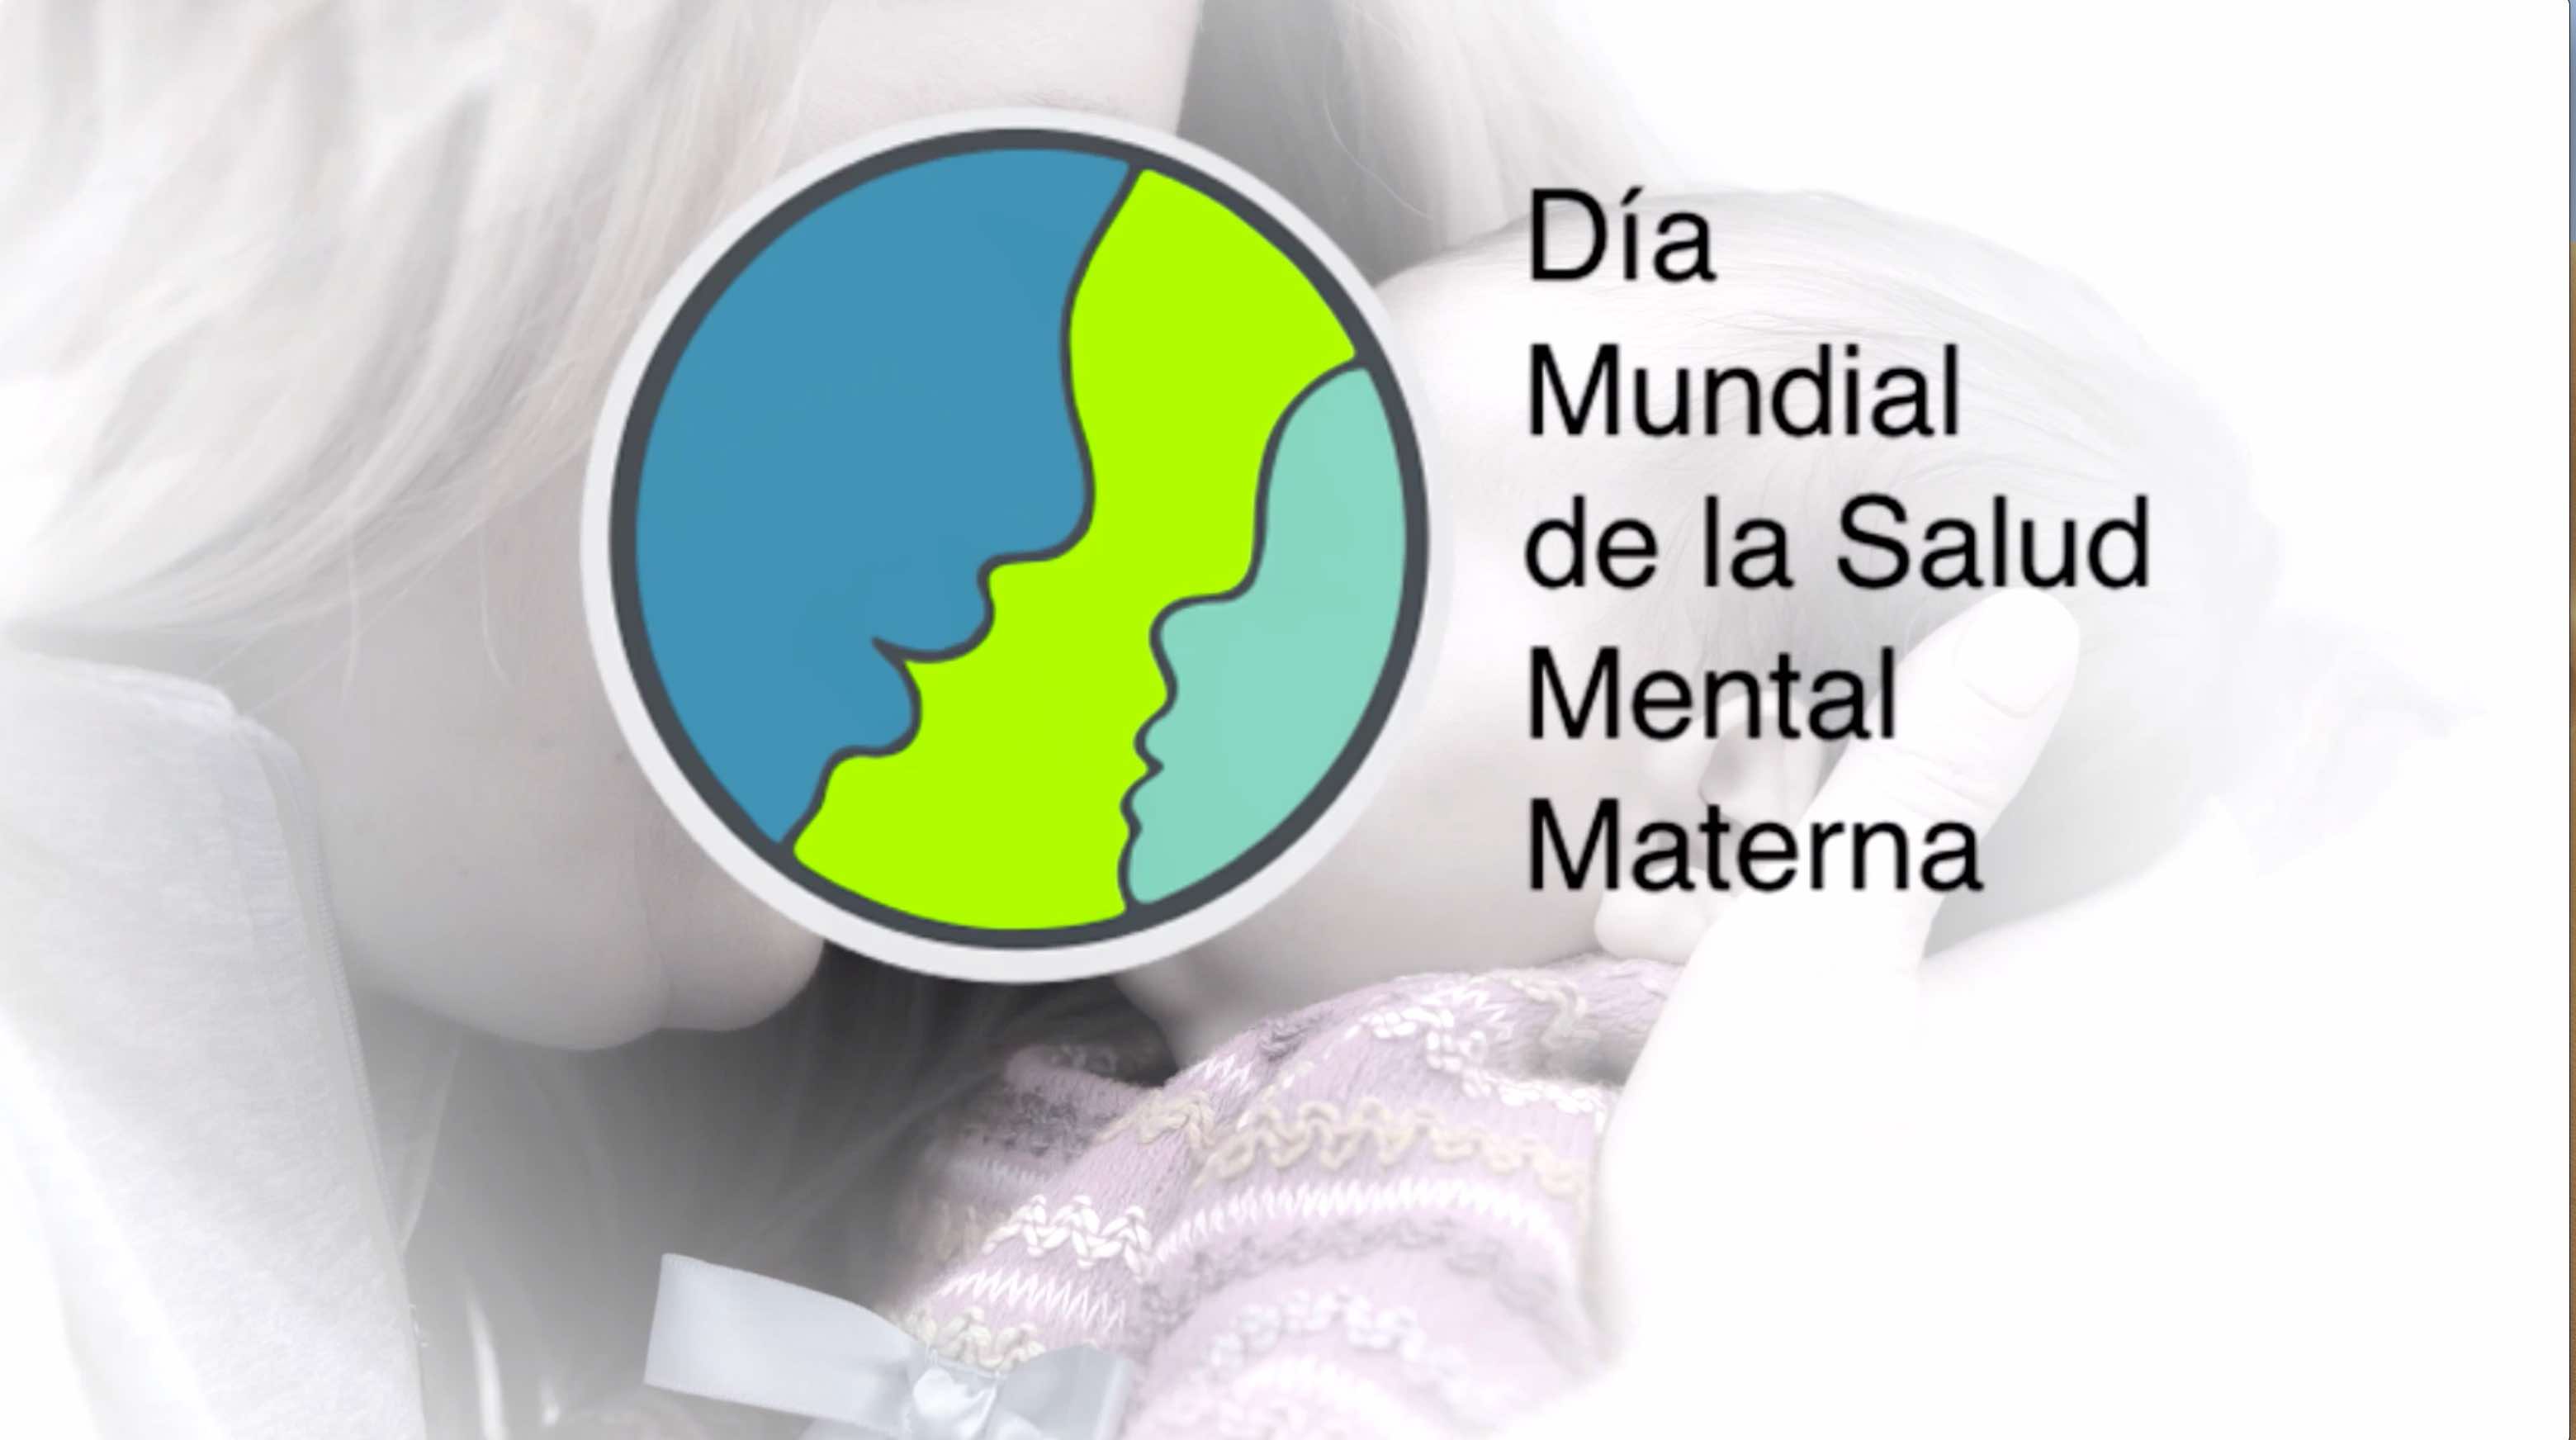  Vídeo para difundir la Campaña del Día Mundial de la Salud Mental Materna- Dexeus